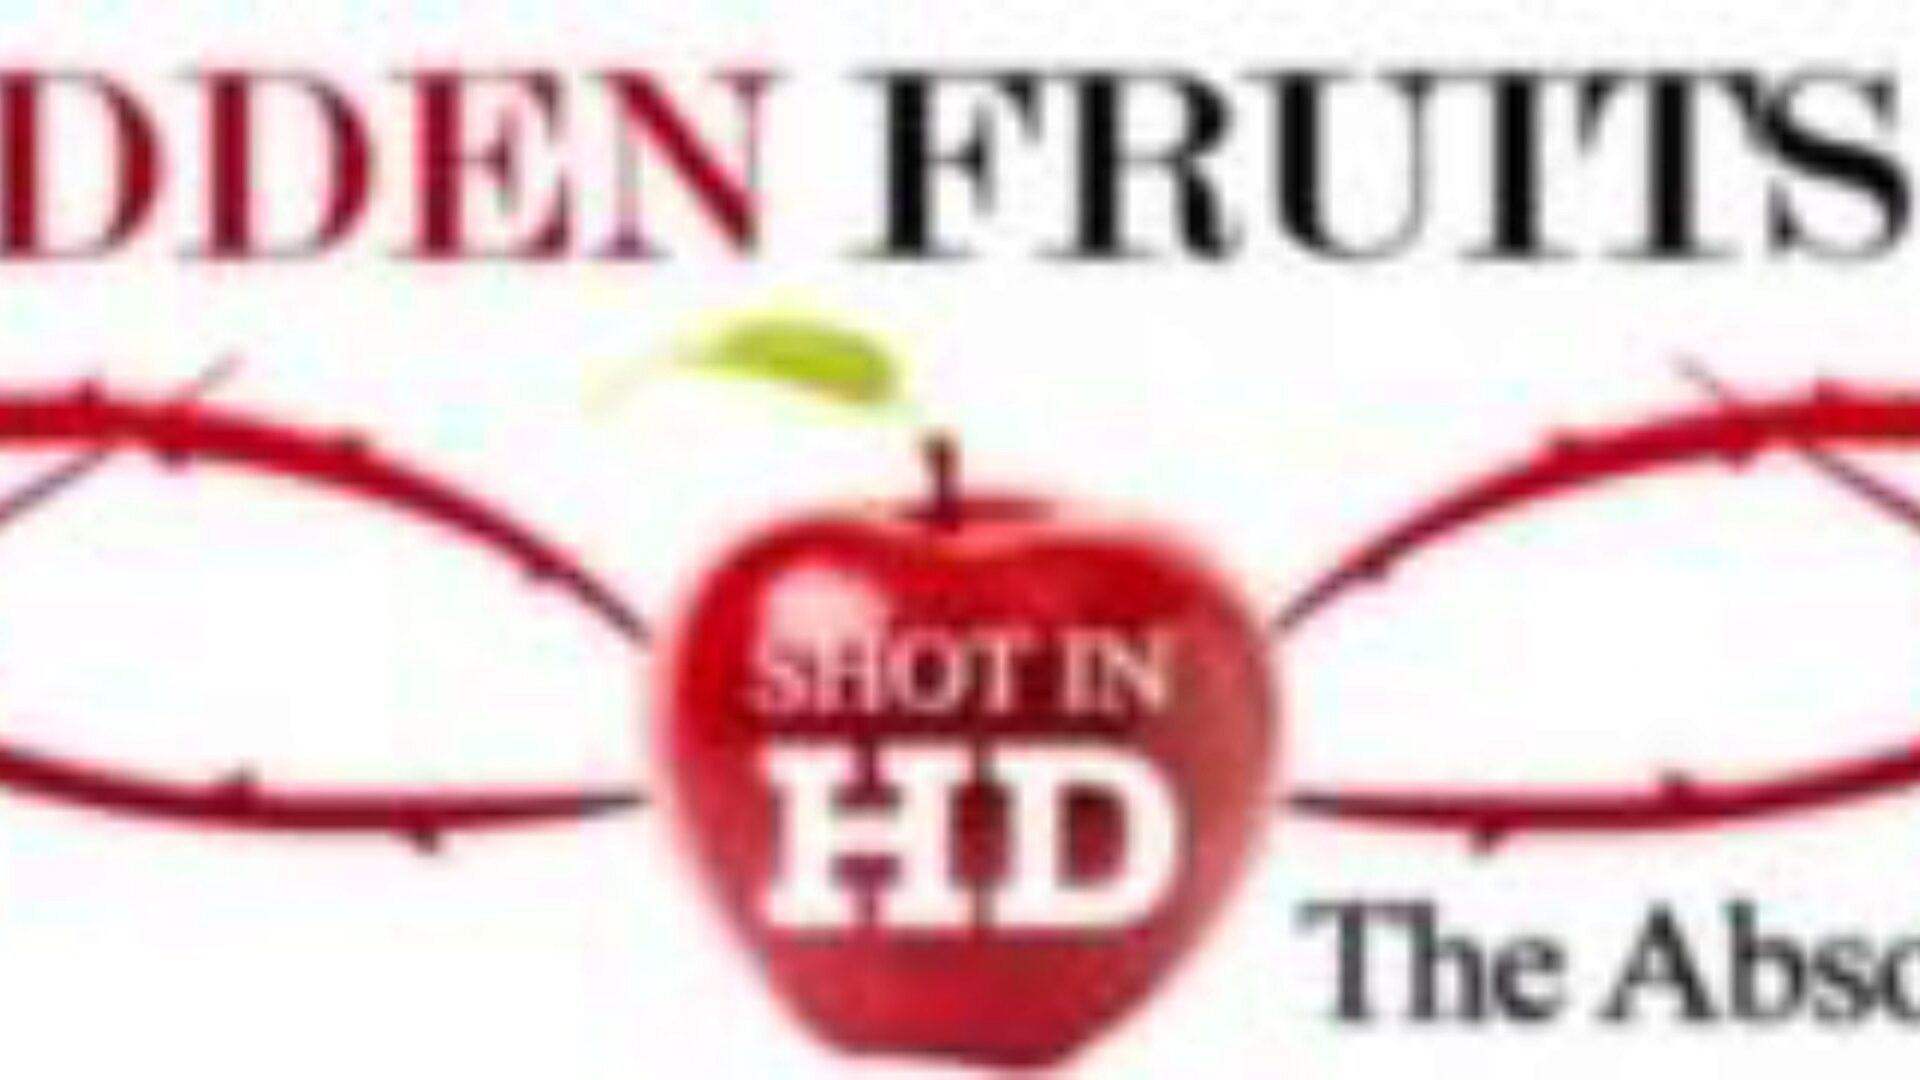 tiltott gyümölcsfilmek: jodi west kettős összeállt, miközben beragadt az ablakba